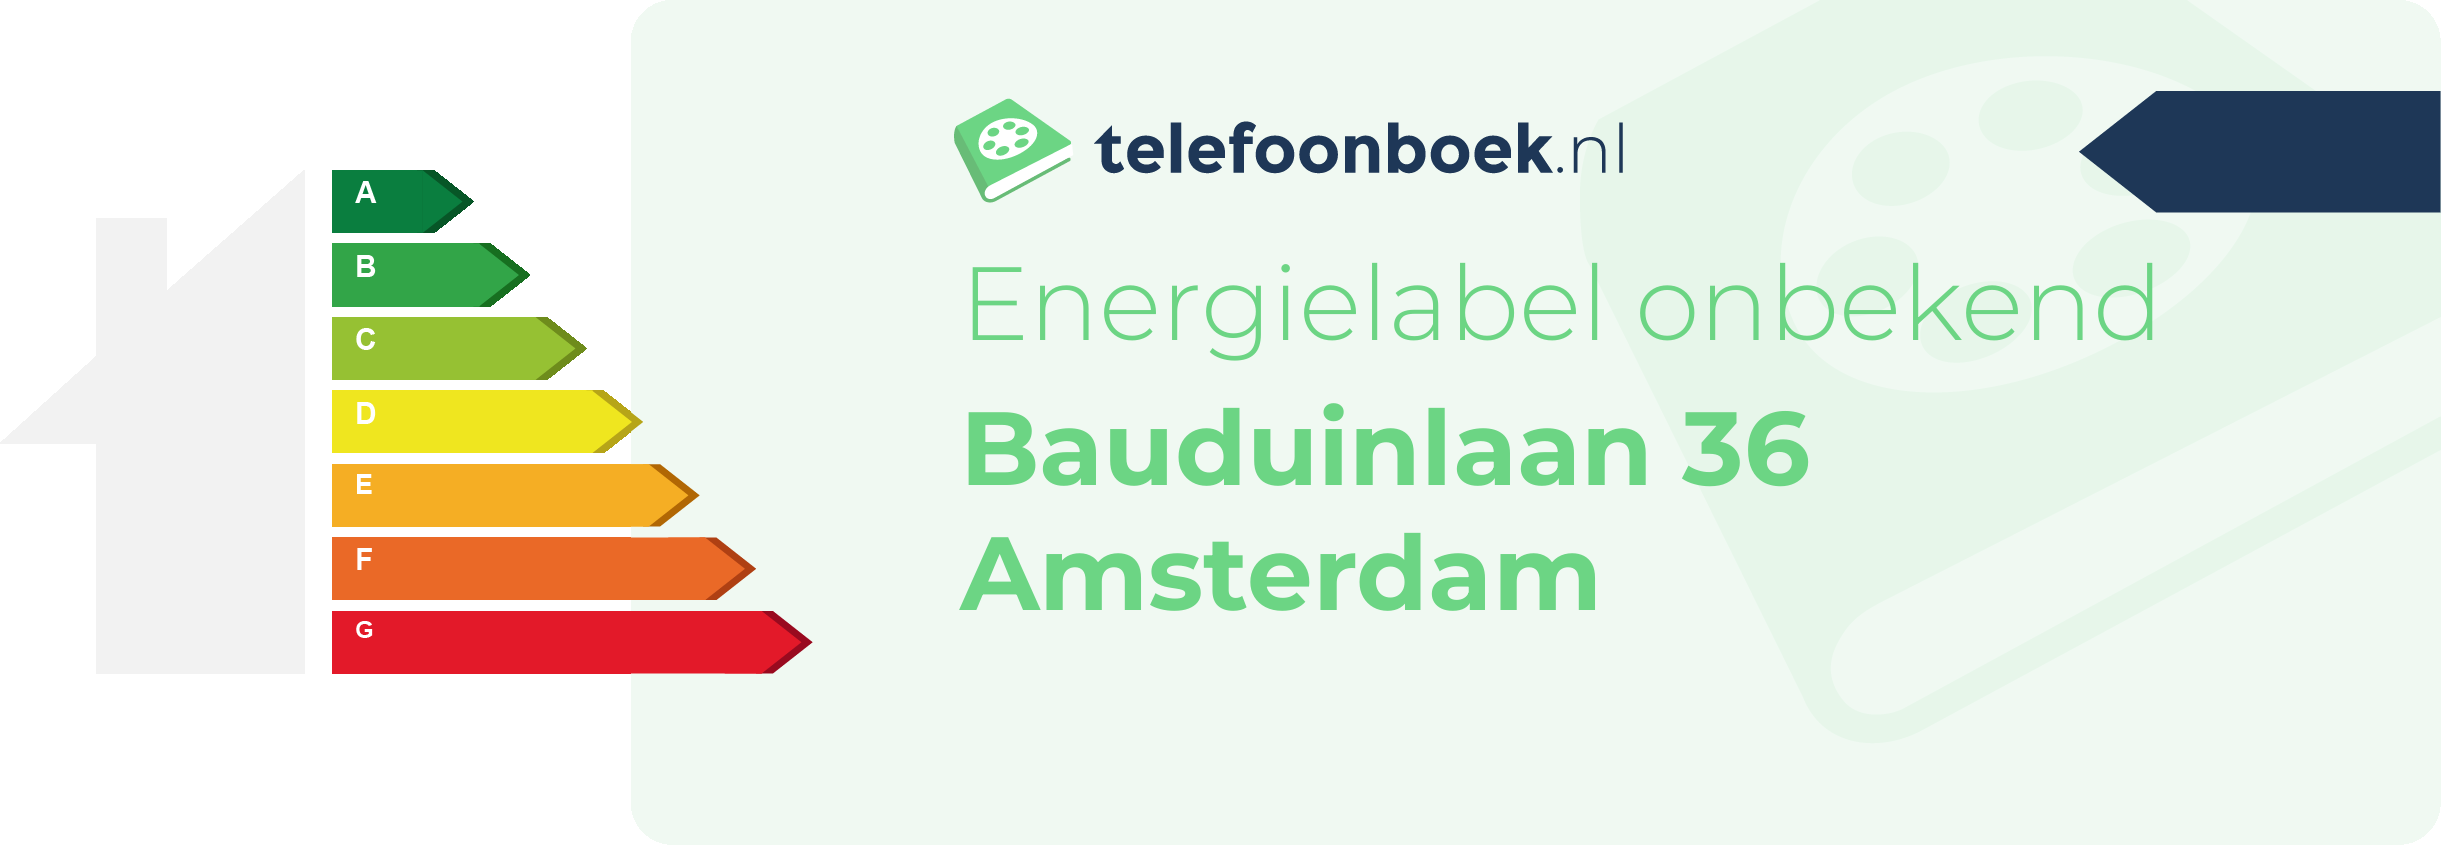 Energielabel Bauduinlaan 36 Amsterdam